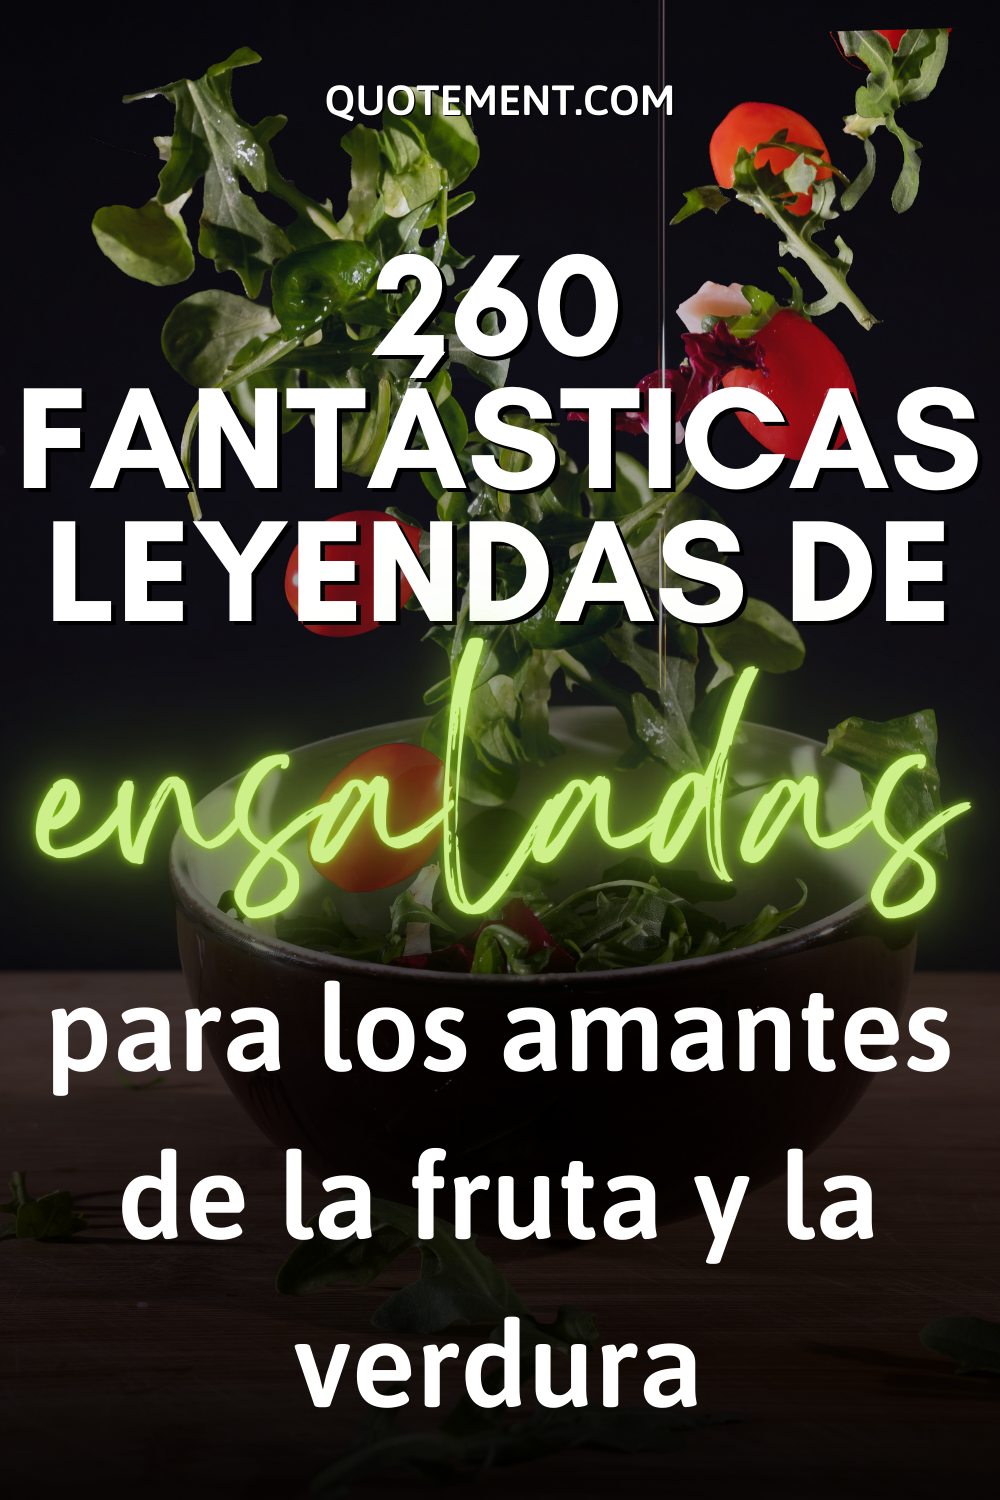 260 fantásticas leyendas de ensaladas para los amantes de la fruta y la verdura